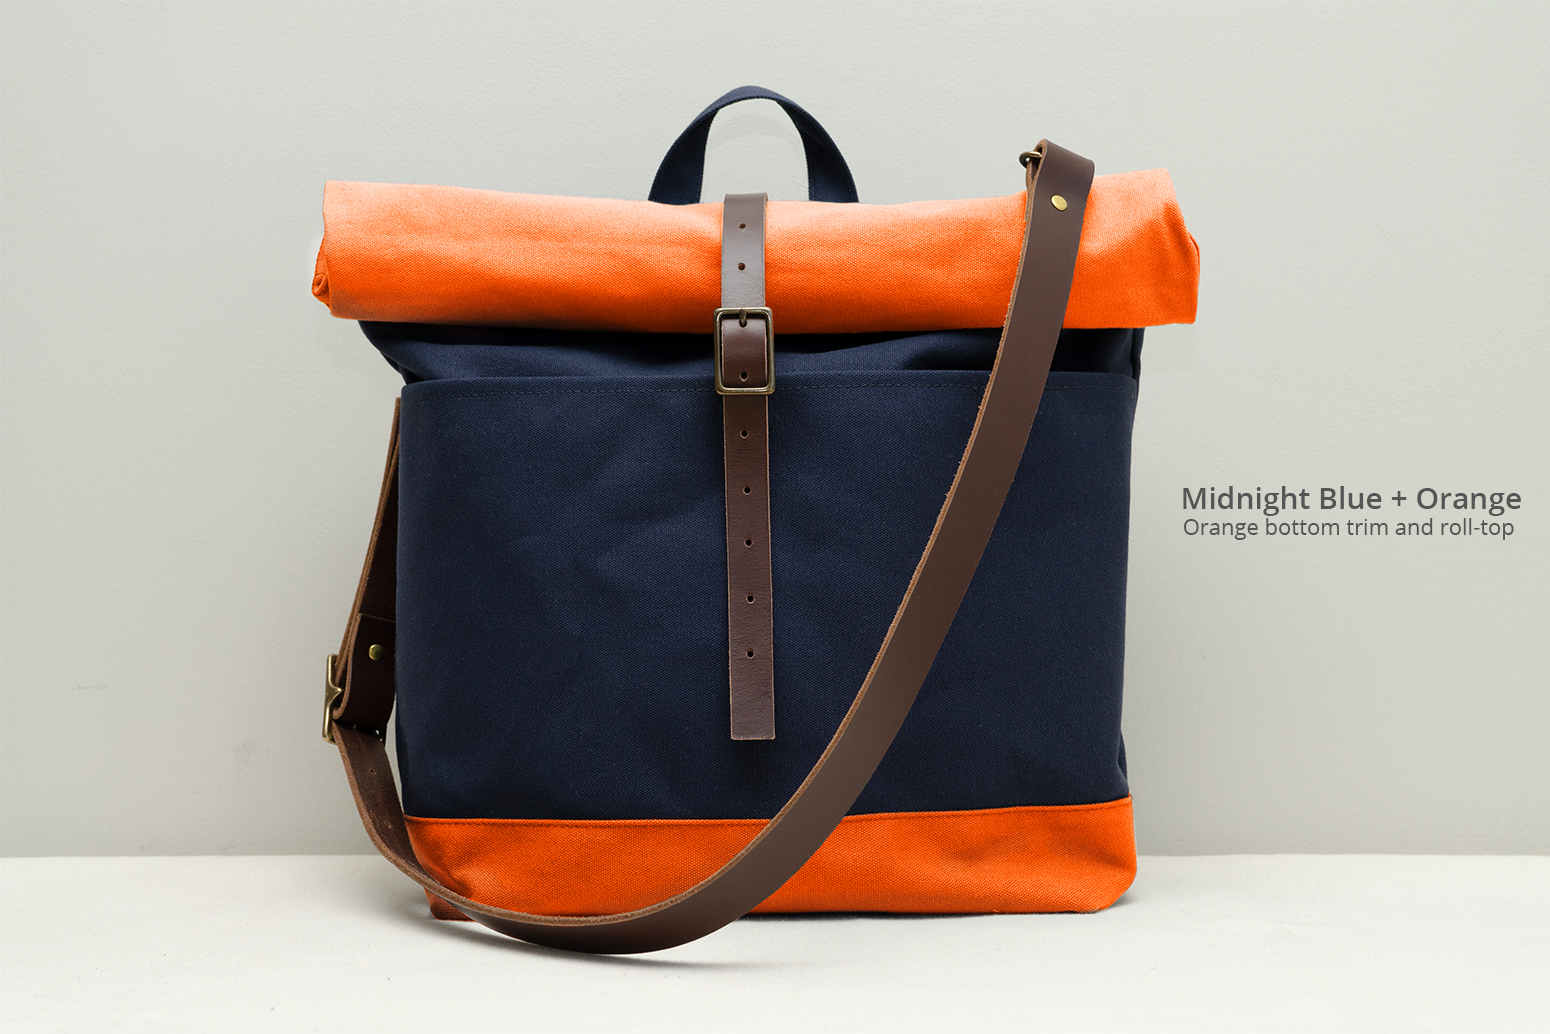 https://www.moderncoup.com/wp-content/uploads/2022/05/moderncoup-roll-top-bag-hero-custom-blue-orange_1055x1034.jpg